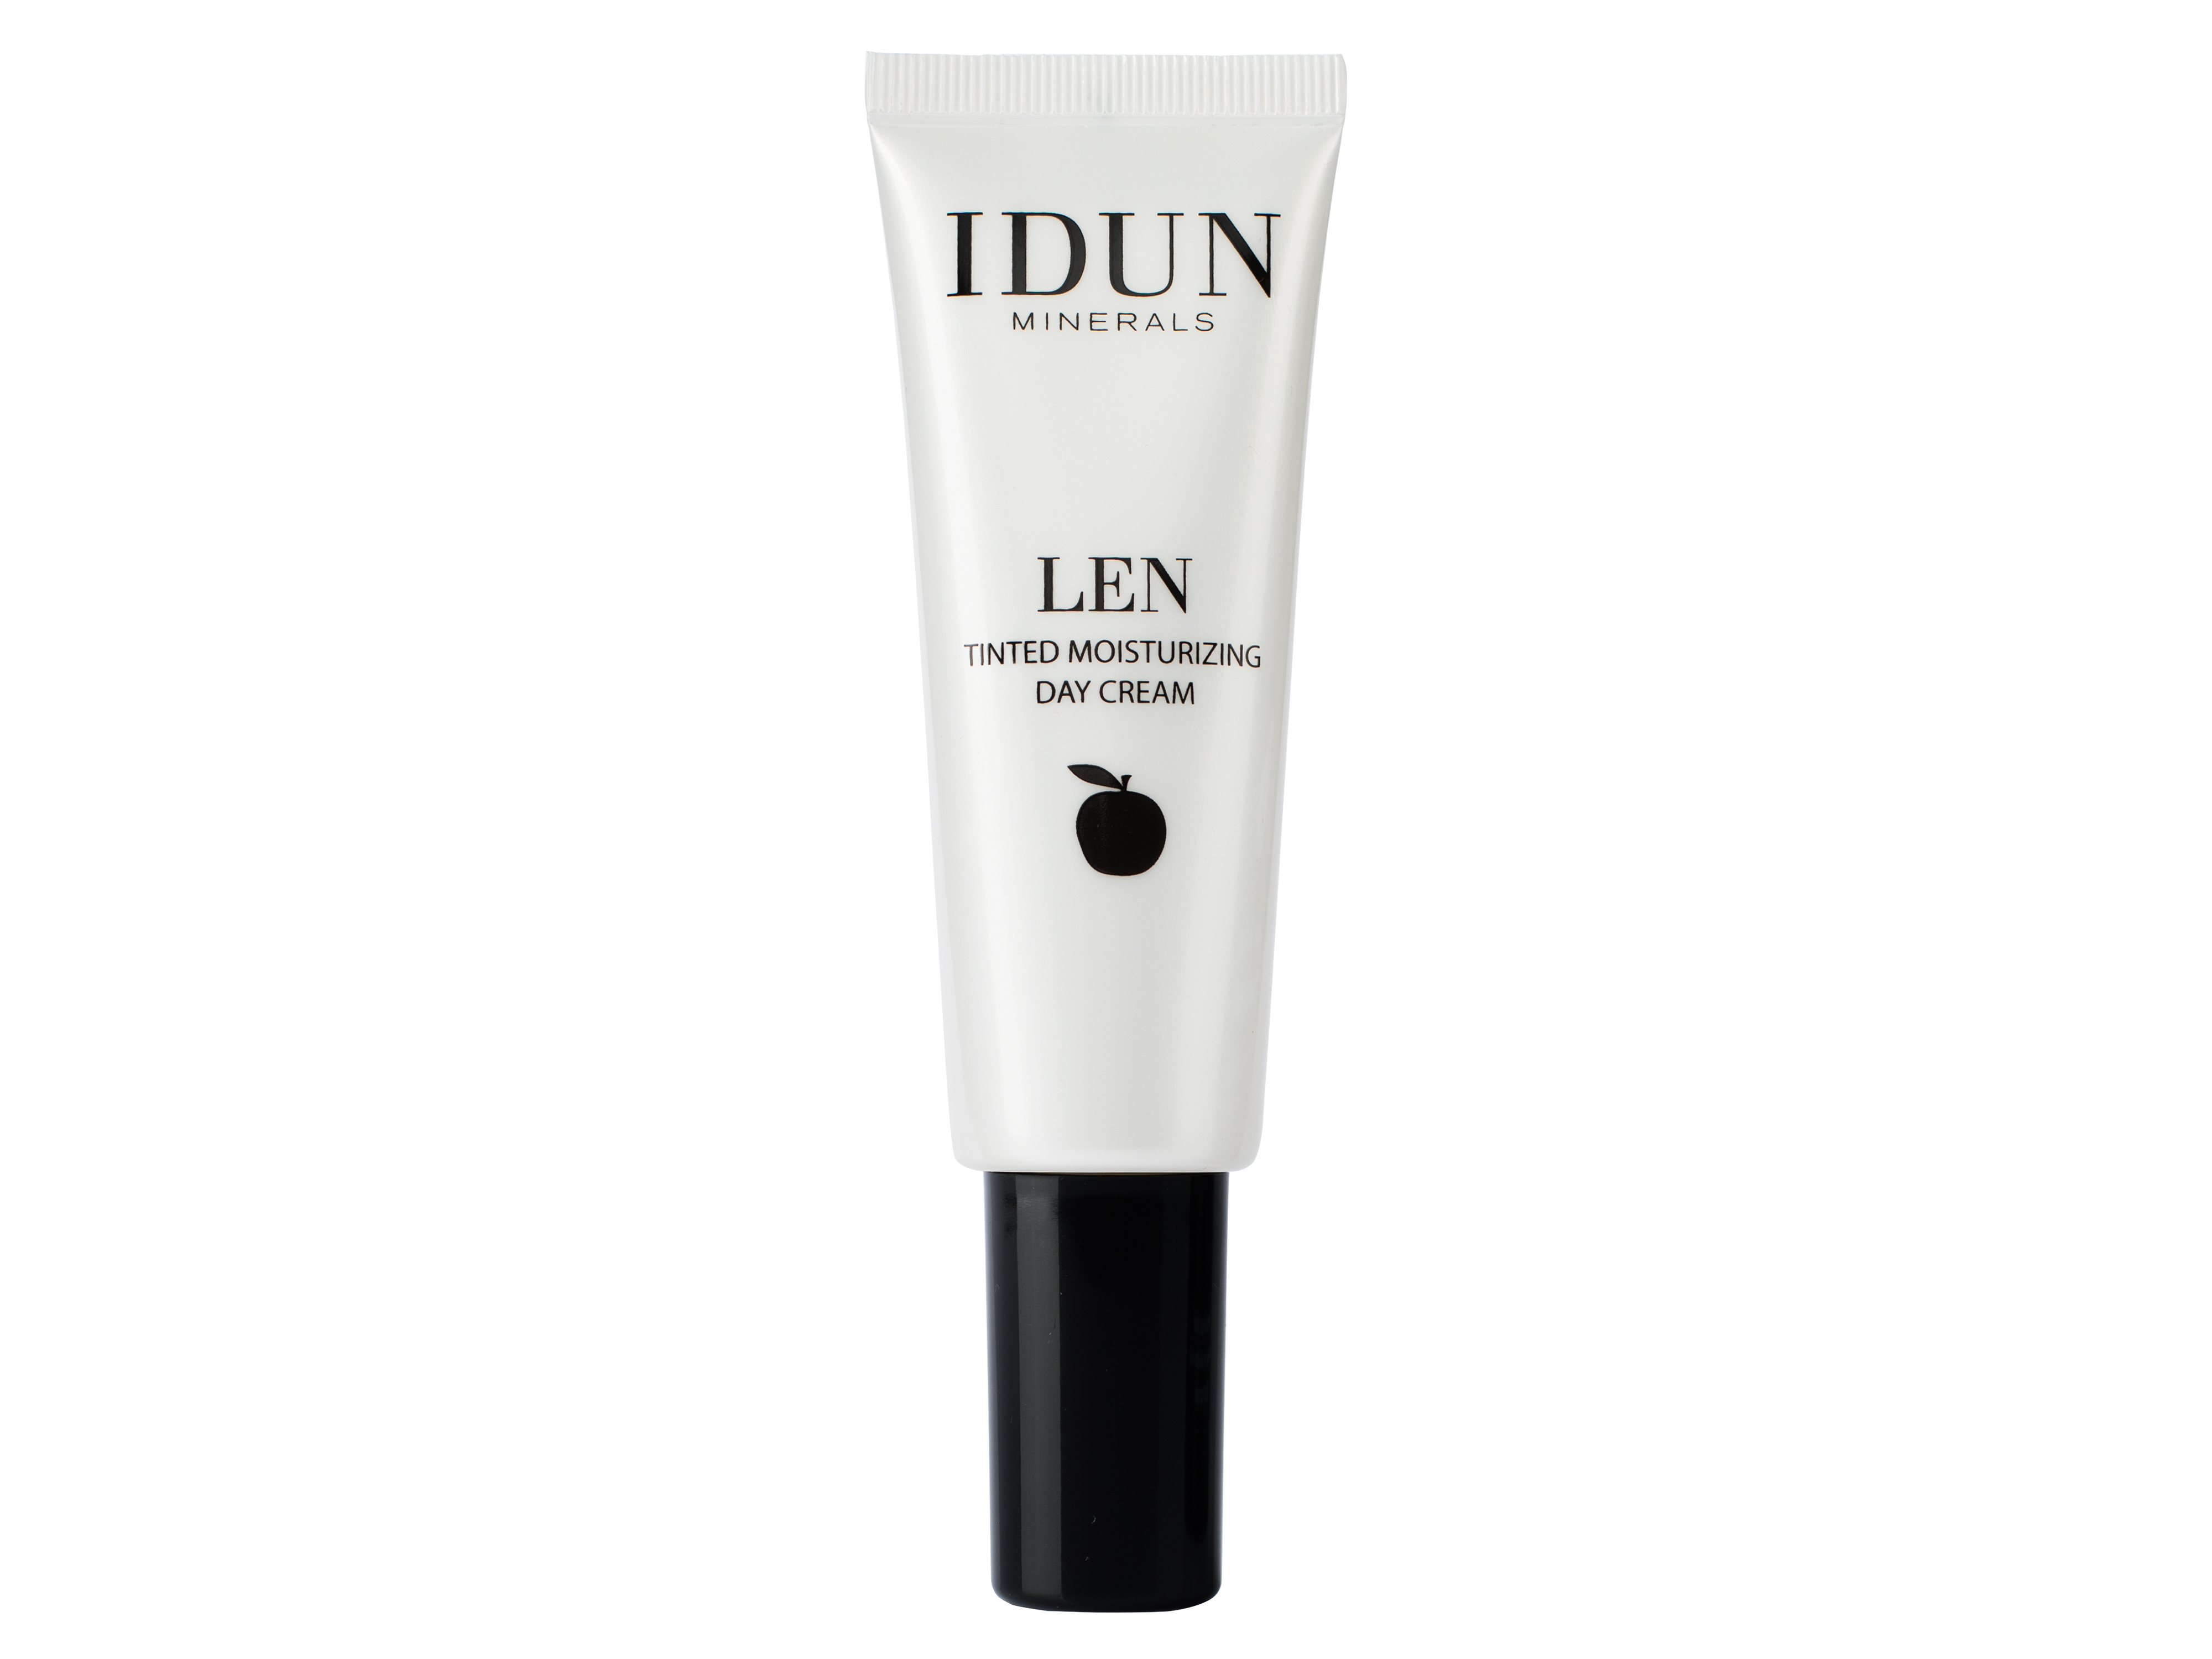 IDUN Minerals IDUNMinerals LEN Tinted Day Cream Light, 50 ml